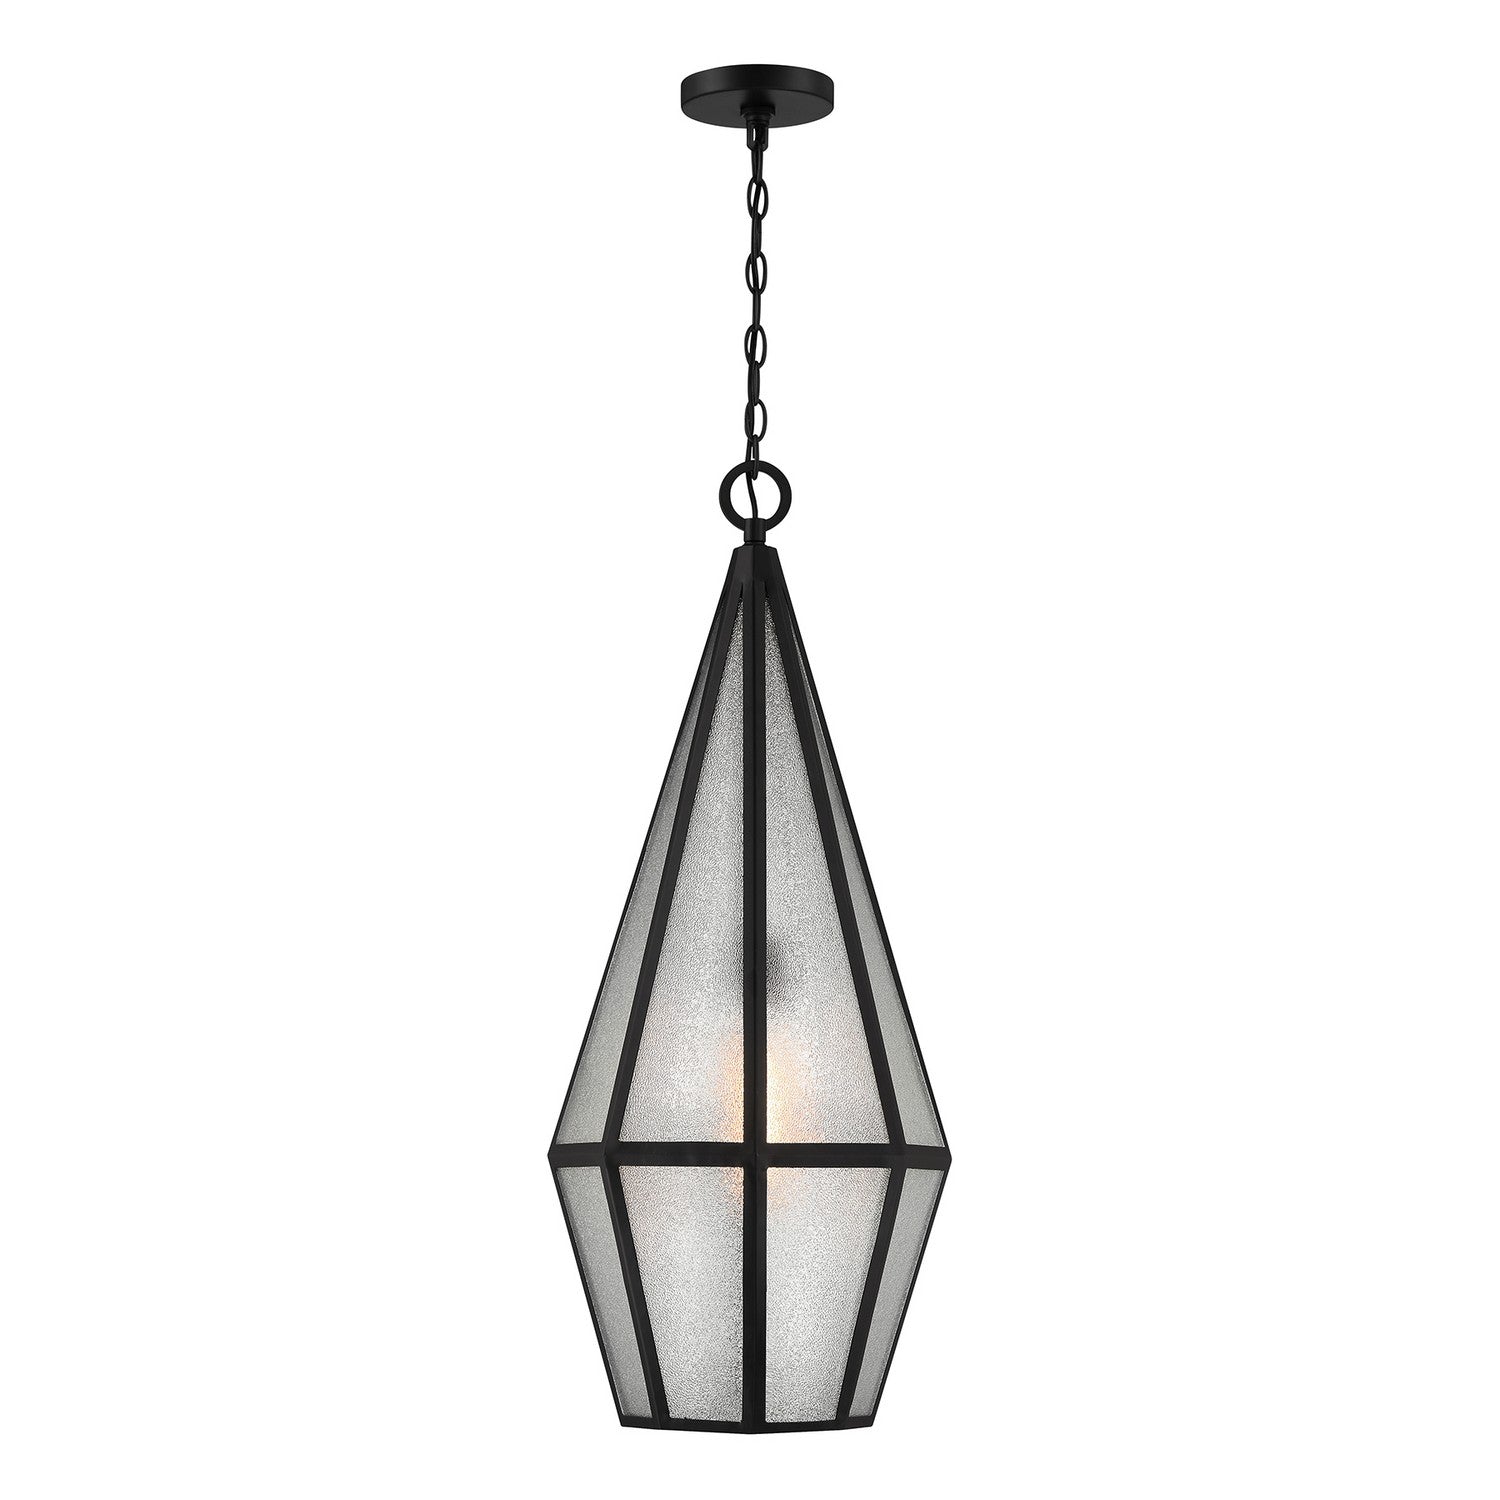 Savoy House - 5-706-BK - One Light Outdoor Hanging Lantern - Peninsula - Matte Black